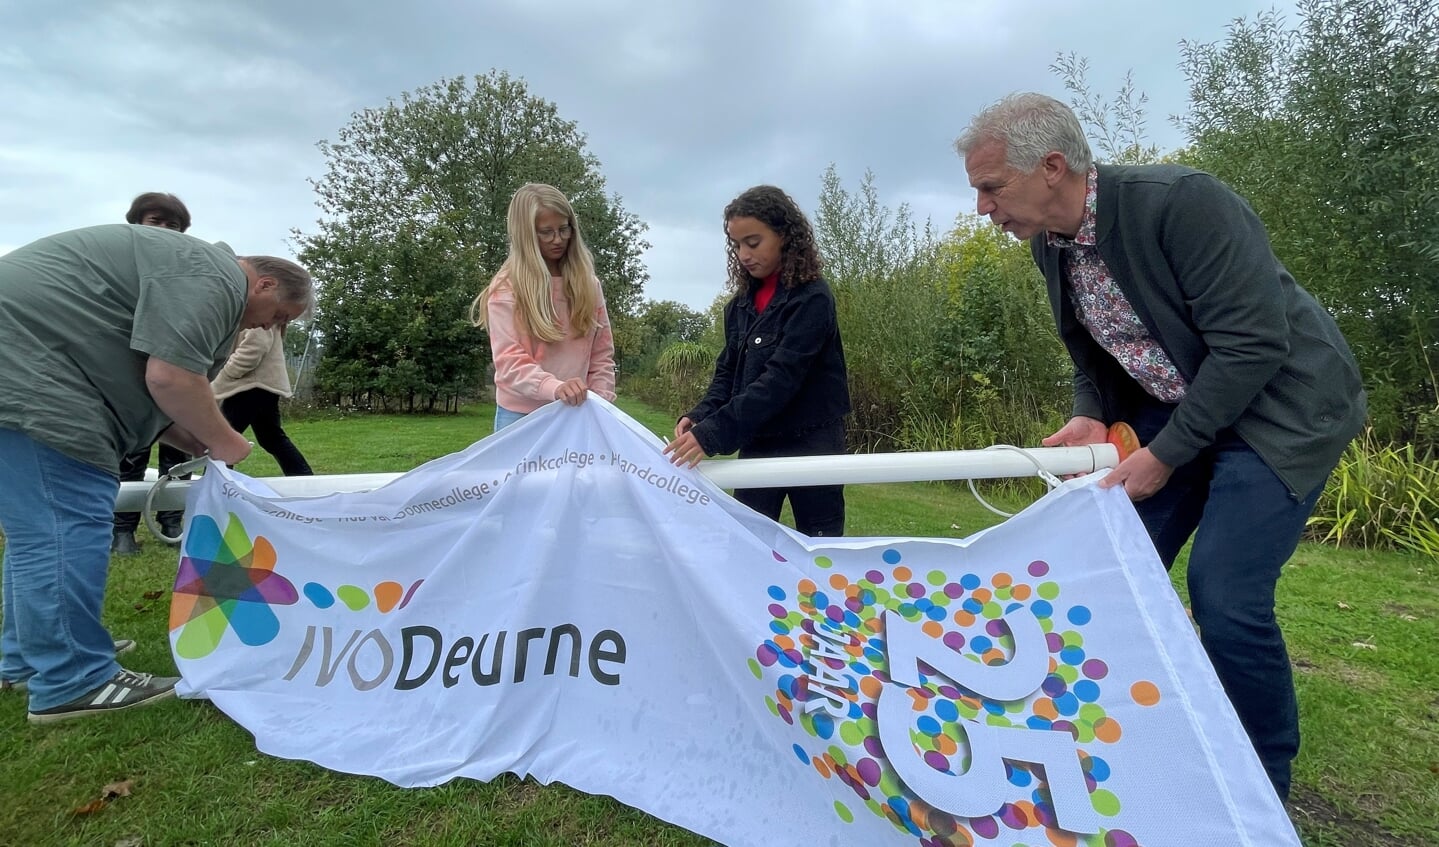 Maandagochtend werd bij de scholen van IVO Deurne de vlag gehesen ter ere van het 25-jarig jubileum.